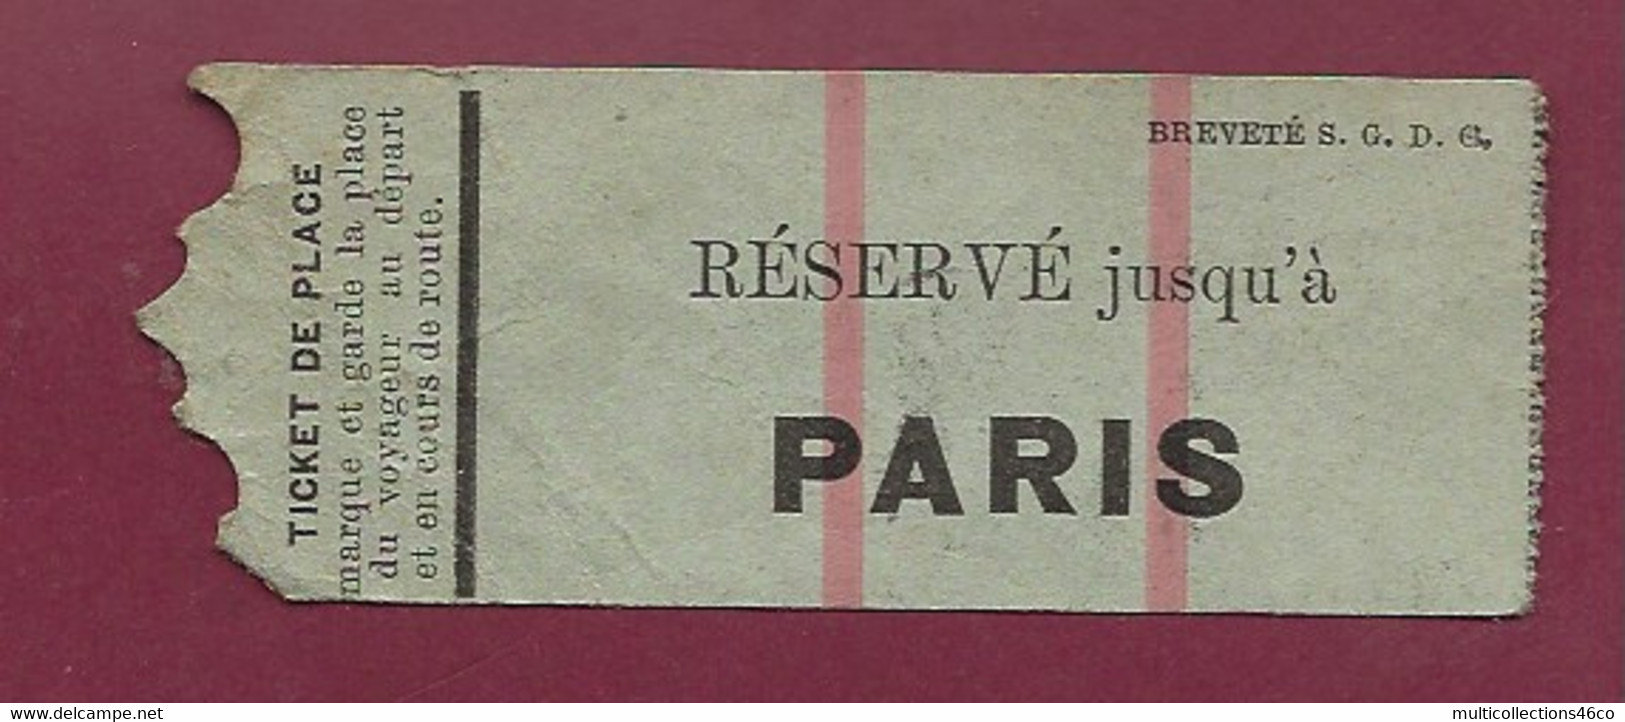 140221 - TICKET CHEMIN DE FER TRAM METRO TRAIN - Réservé Jusqu'à PARIS Voyageur - Europe